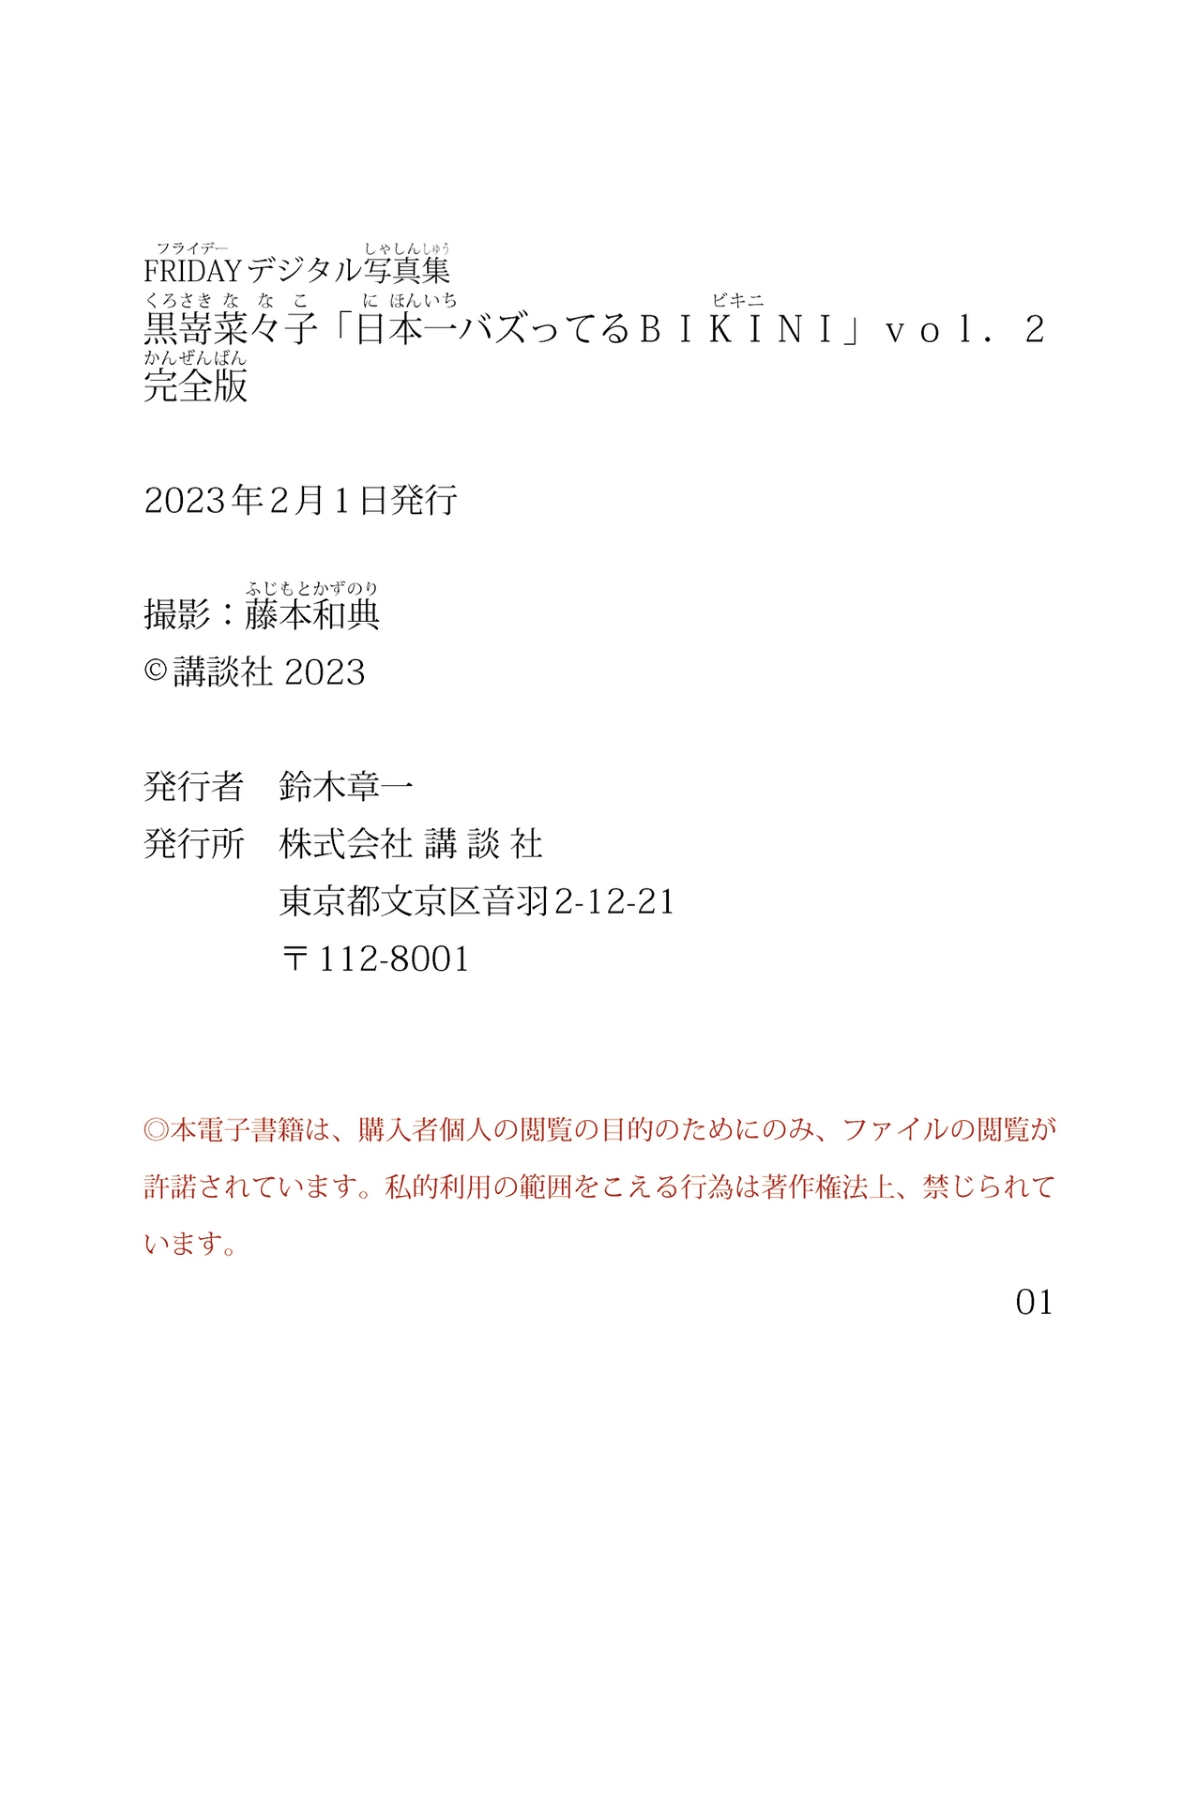 FRIDAYデジタル写真集 Digital Photobook 2023 01 27 Nanako Kurosaki 黒嵜菜々子 Nihon Ichi Buzz tteru Bikini Vol 2 0091 8035700054.jpg